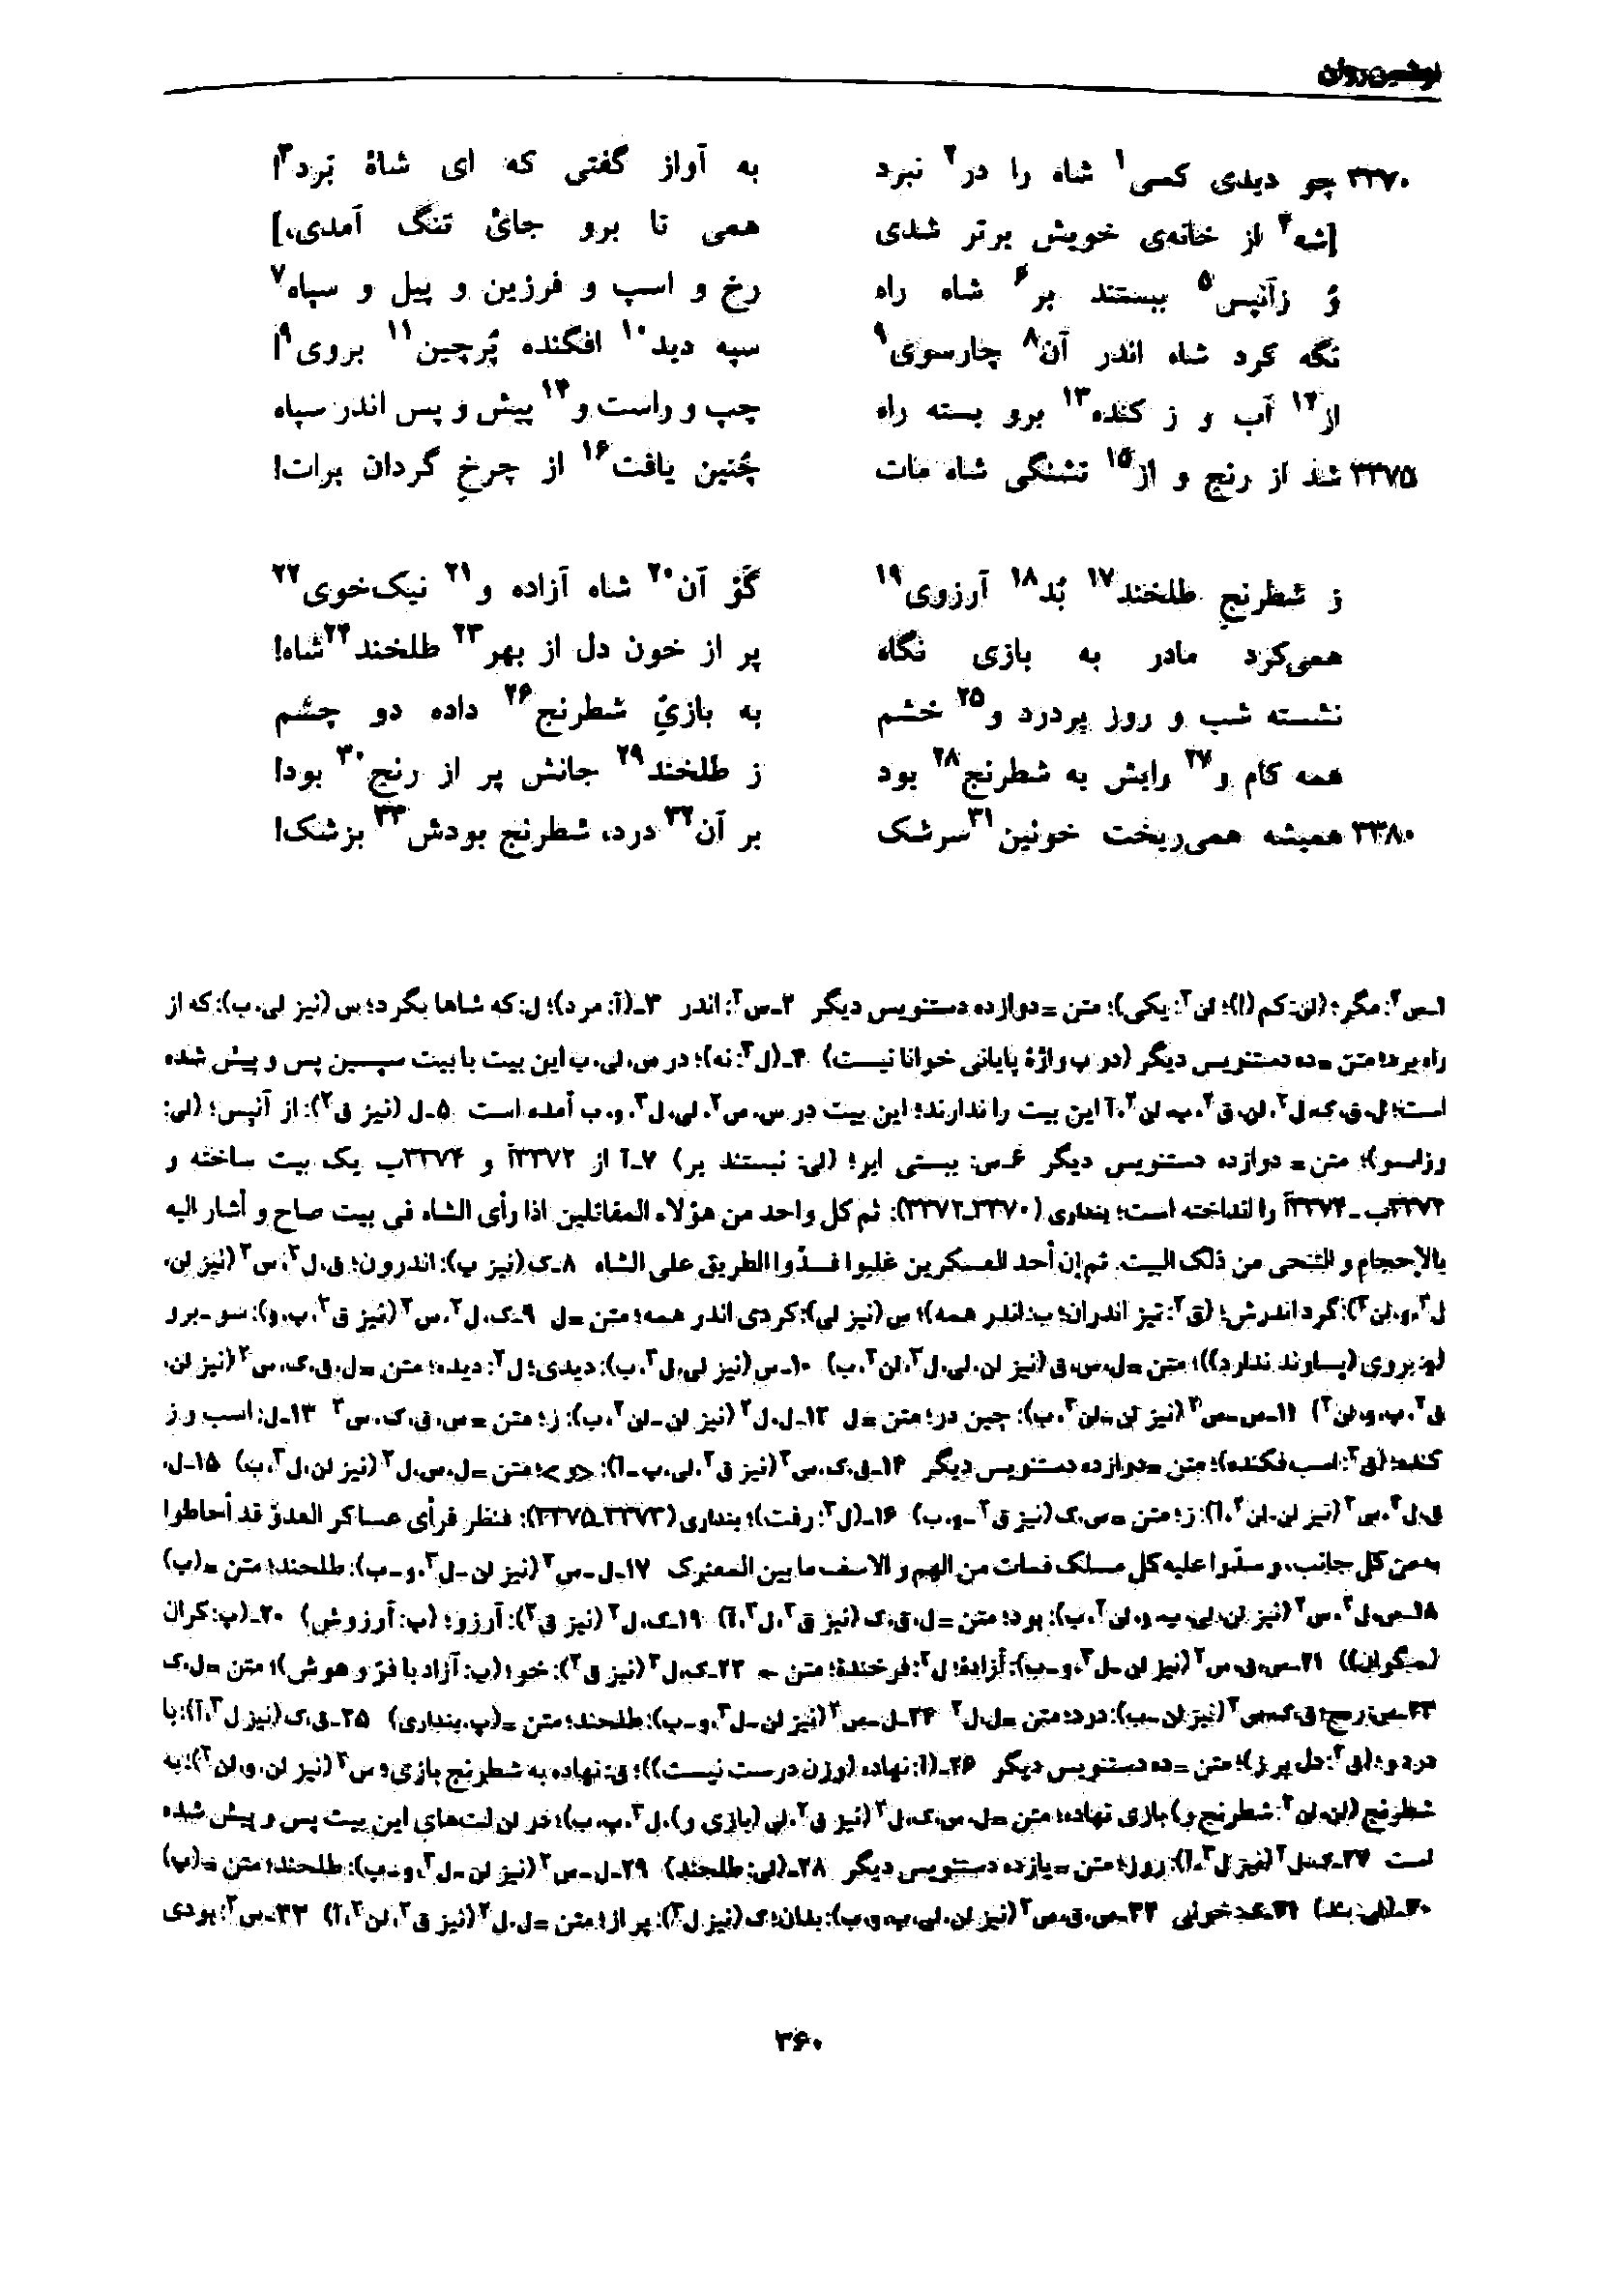 vol. 7, p. 360